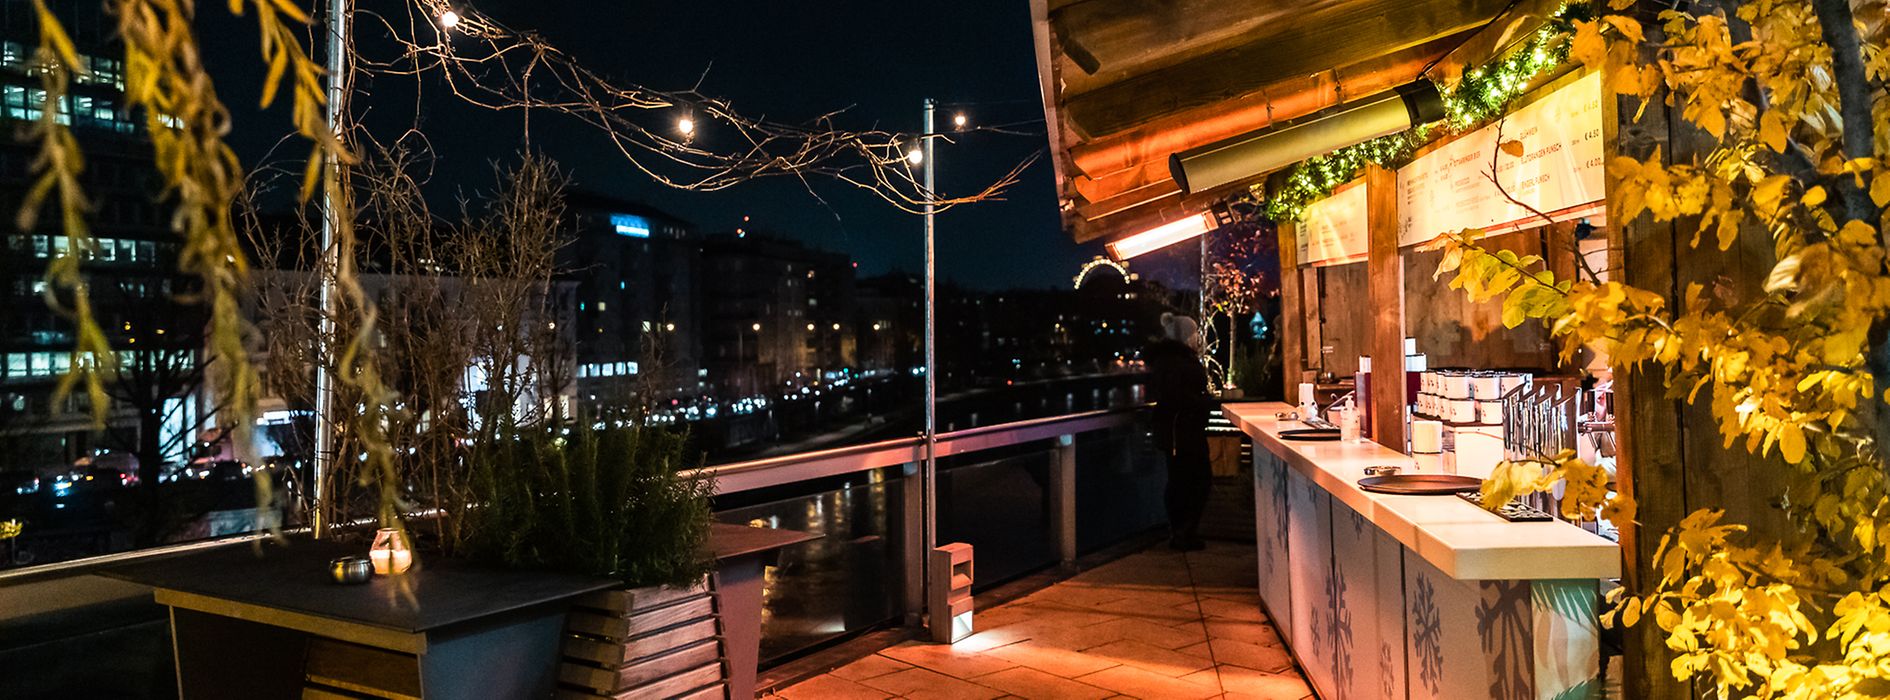 Gente bebiendo ponche en una terraza con vista sobre el Canal del Danubio